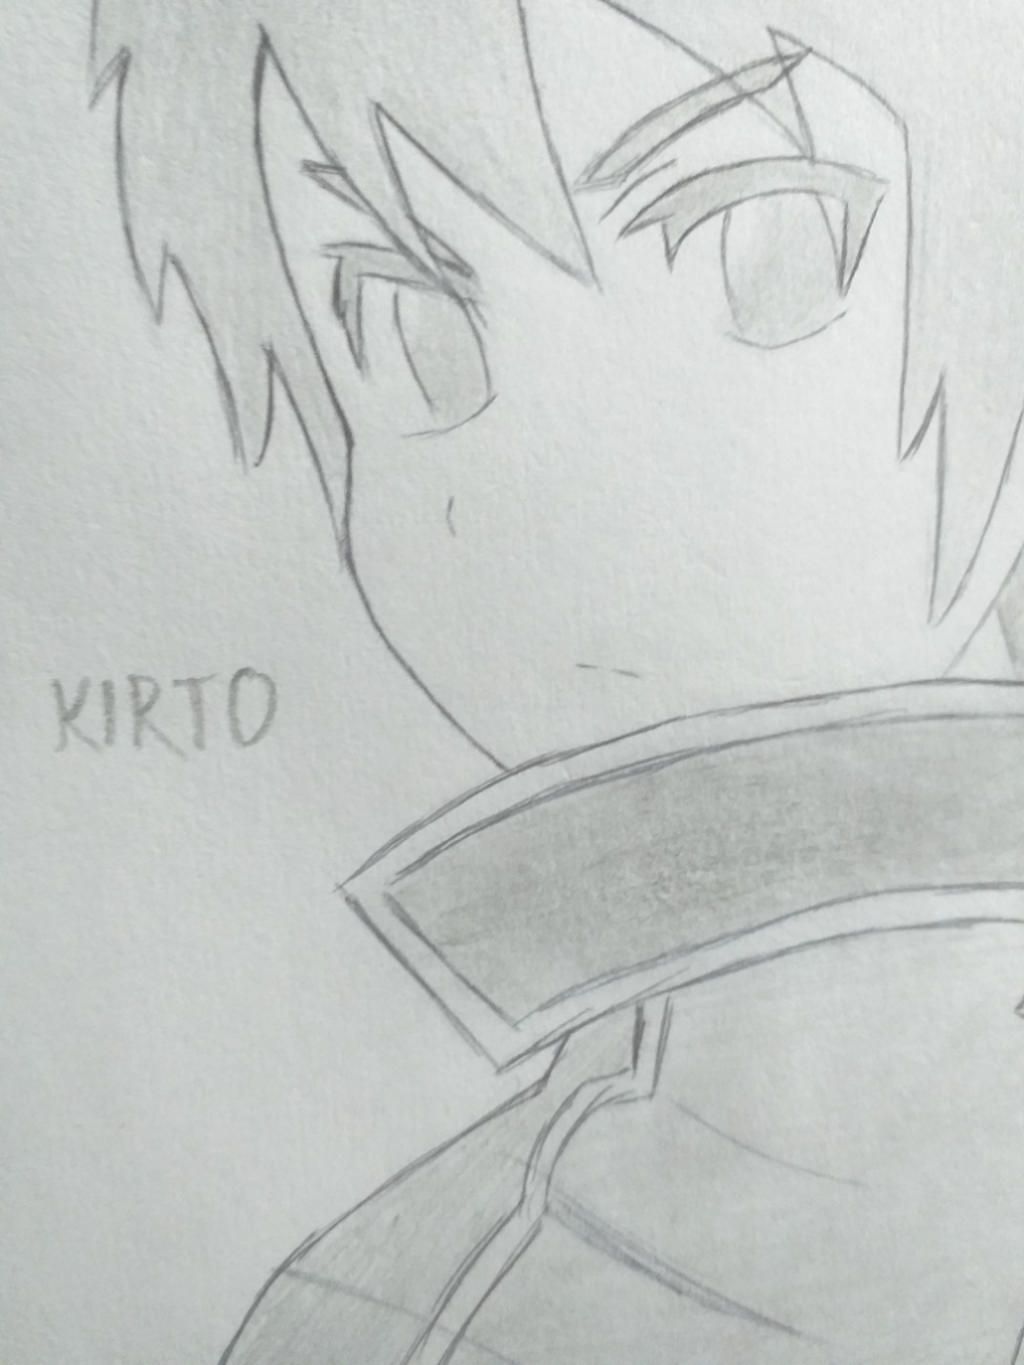 Ảnh Kirito và Asuna Đẹp Ngầu Lãng Mạn Chất Nhất